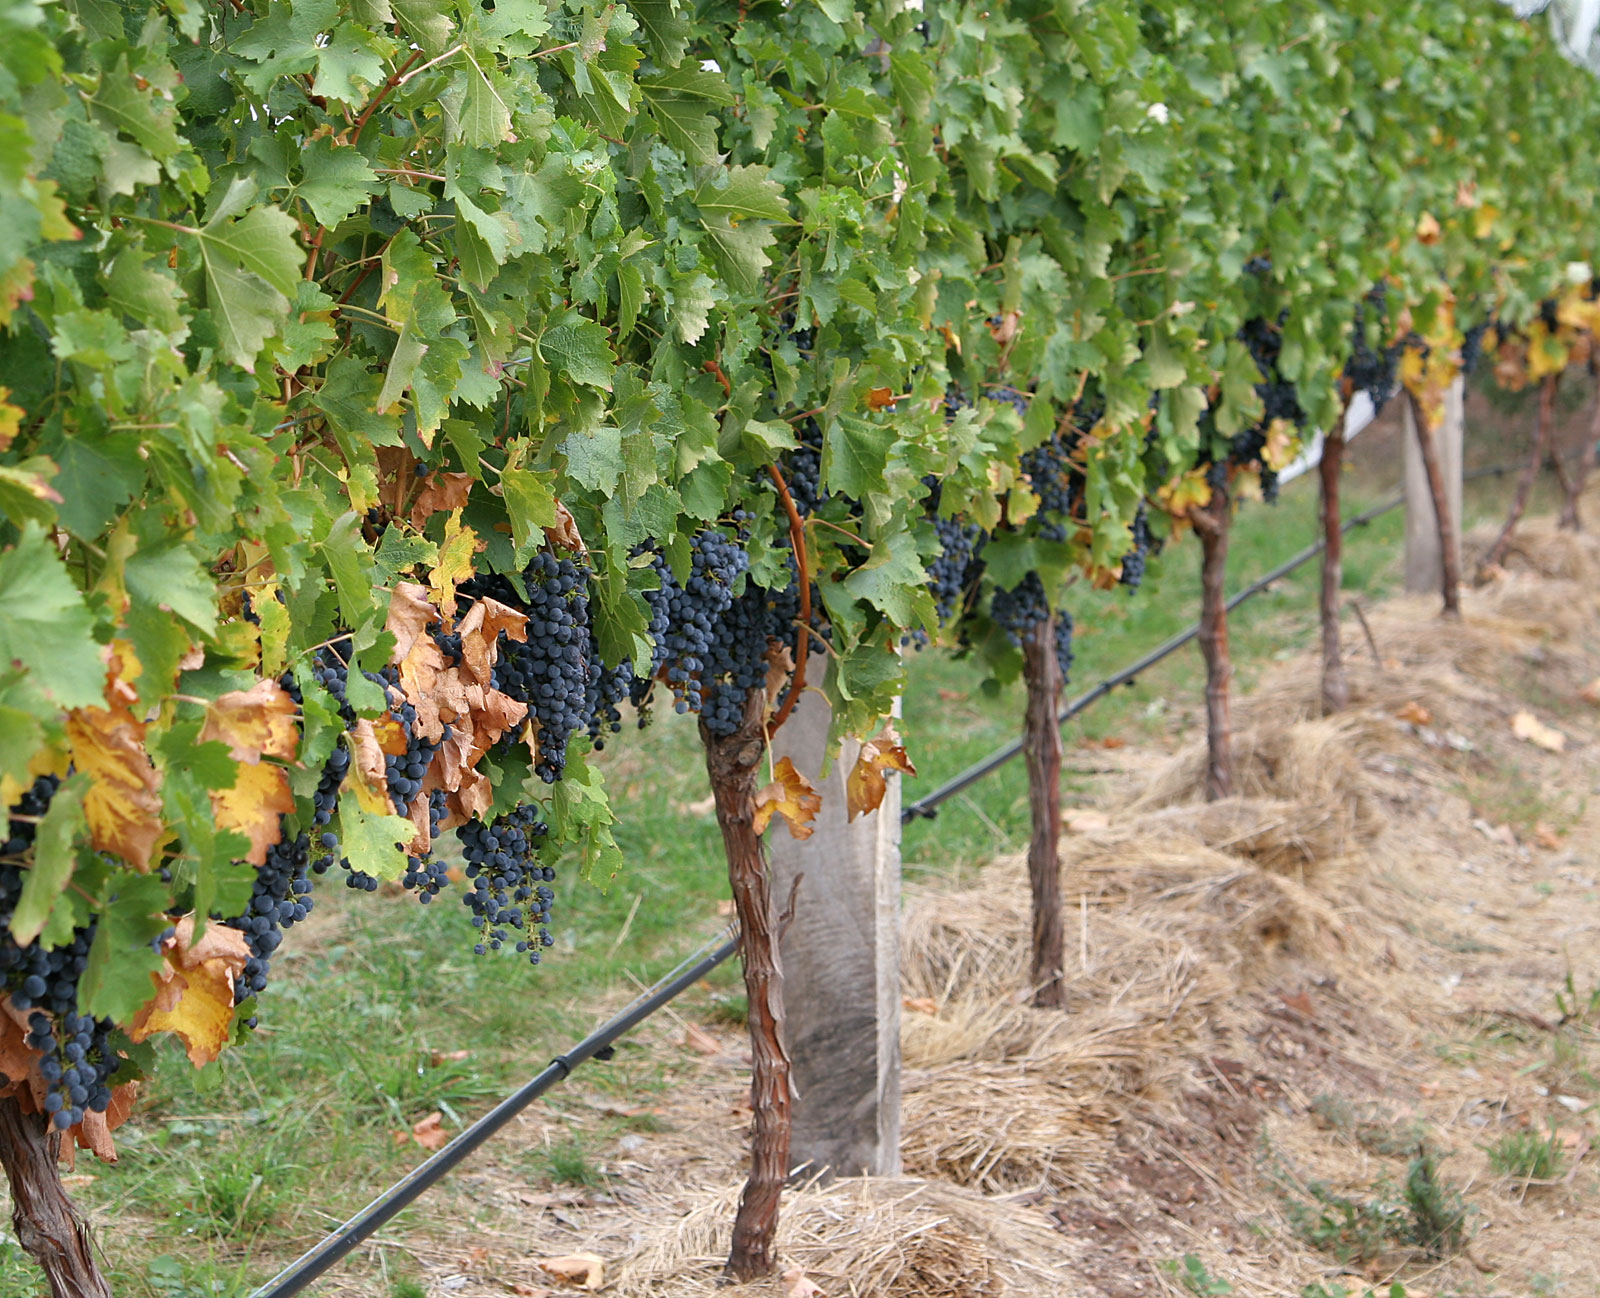 Sorte vinove loze otporne na gljivične bolesti